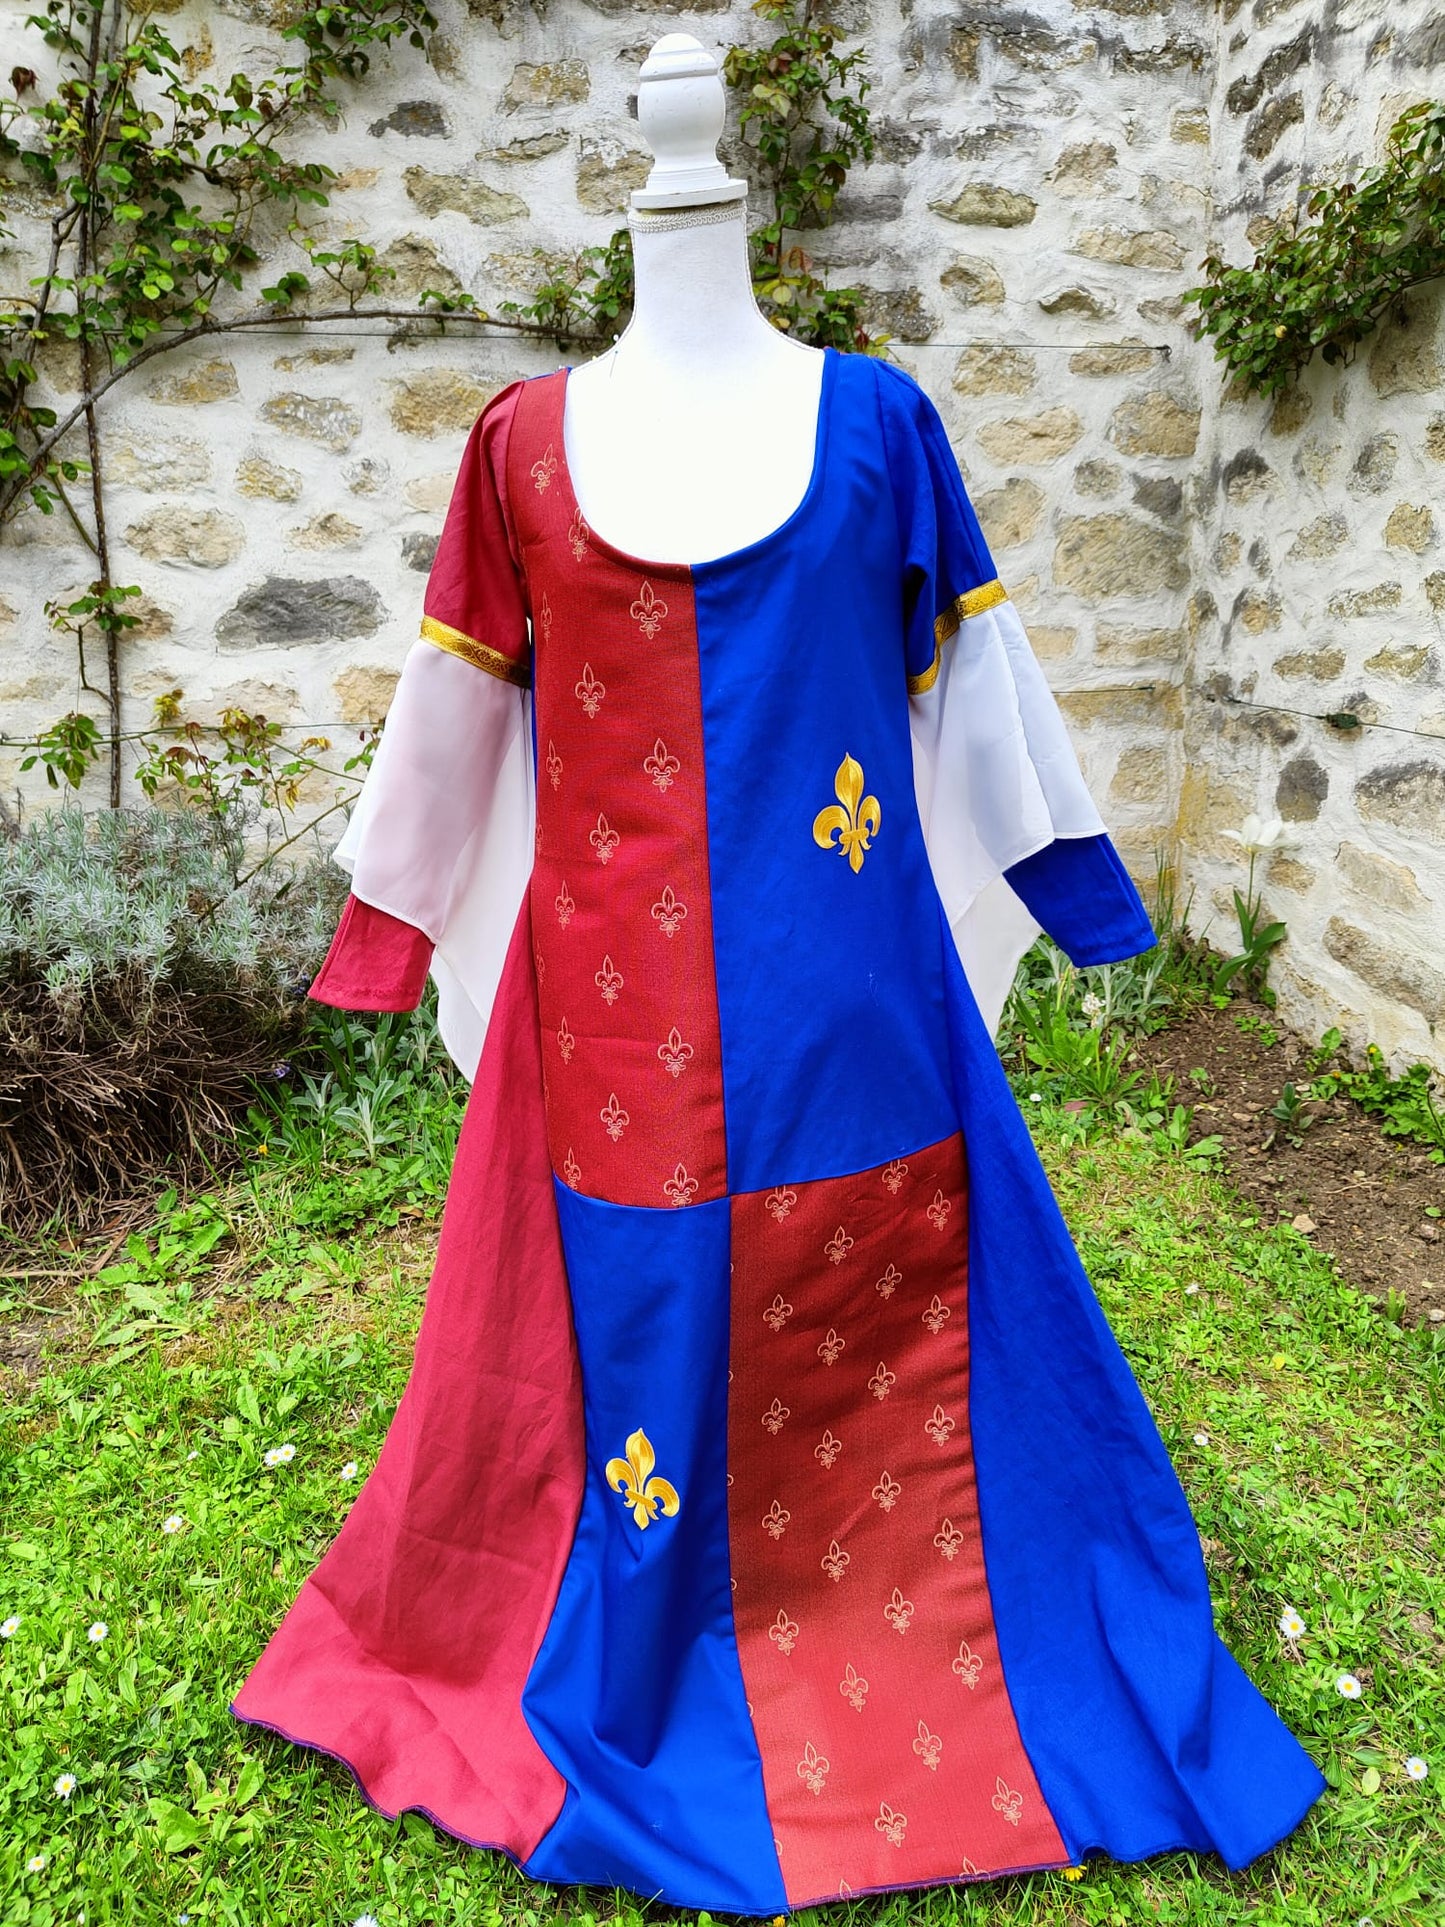 Robe armoiries fleurs de lys, évocation XIVe siècle taille 40/44